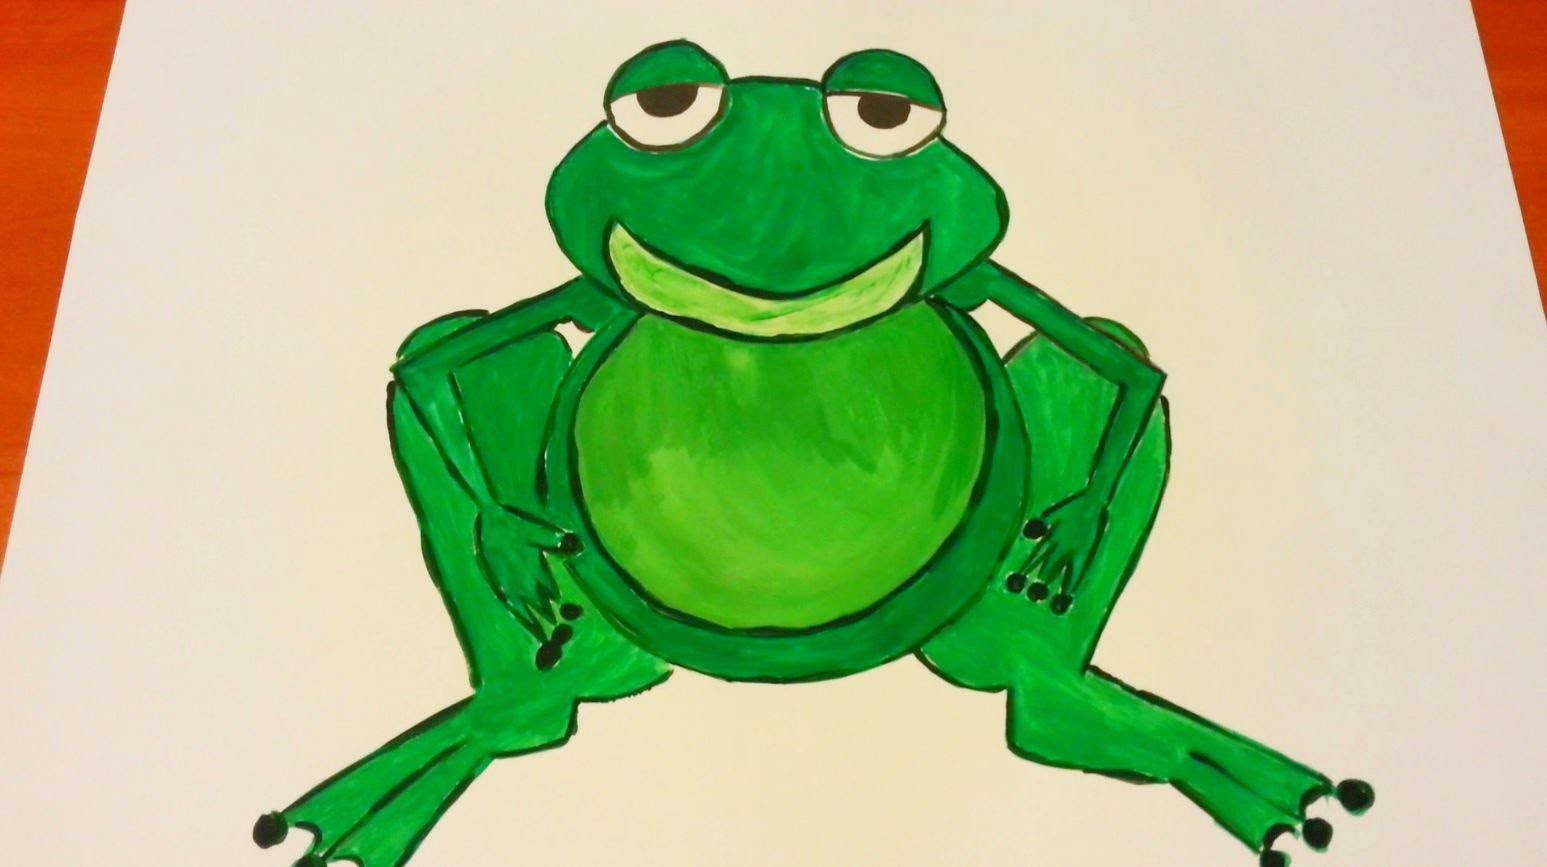 How to draw a frog - painting with a child, Jak namalować żabkę - malowanie z dzieckiem